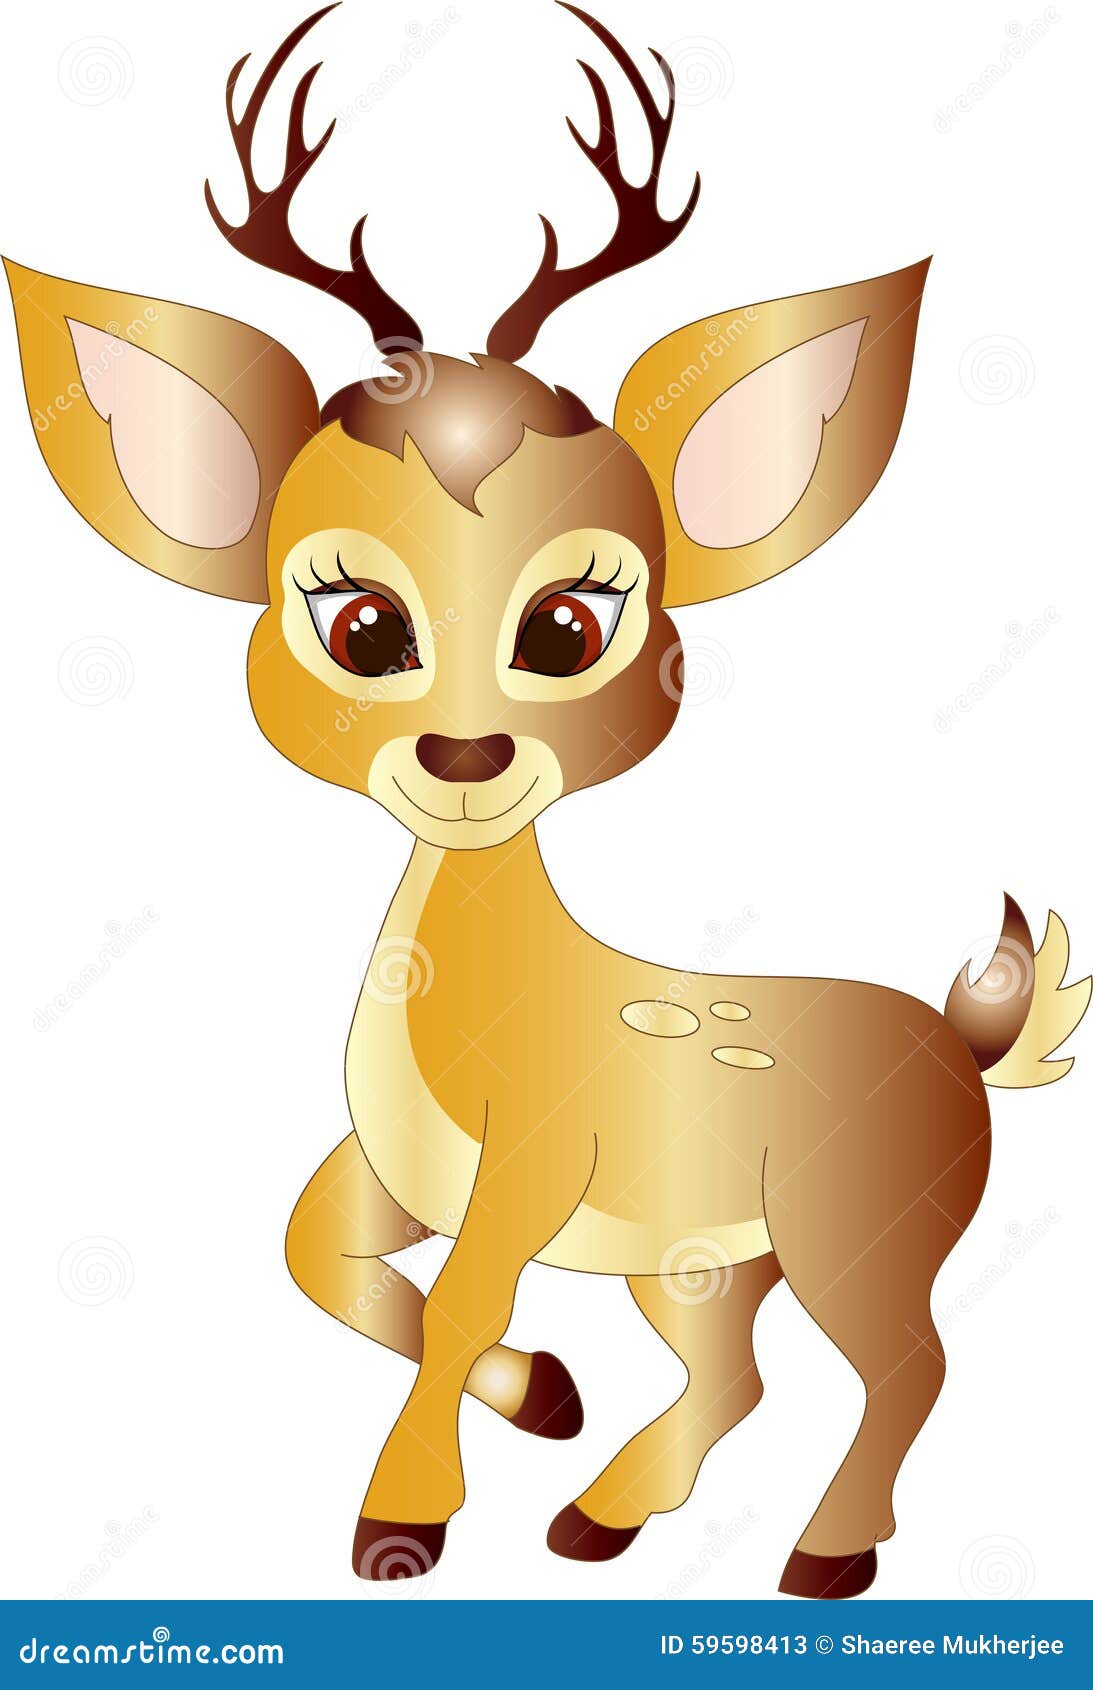 Cartoon Deer Stock Vector - Image: 59598413